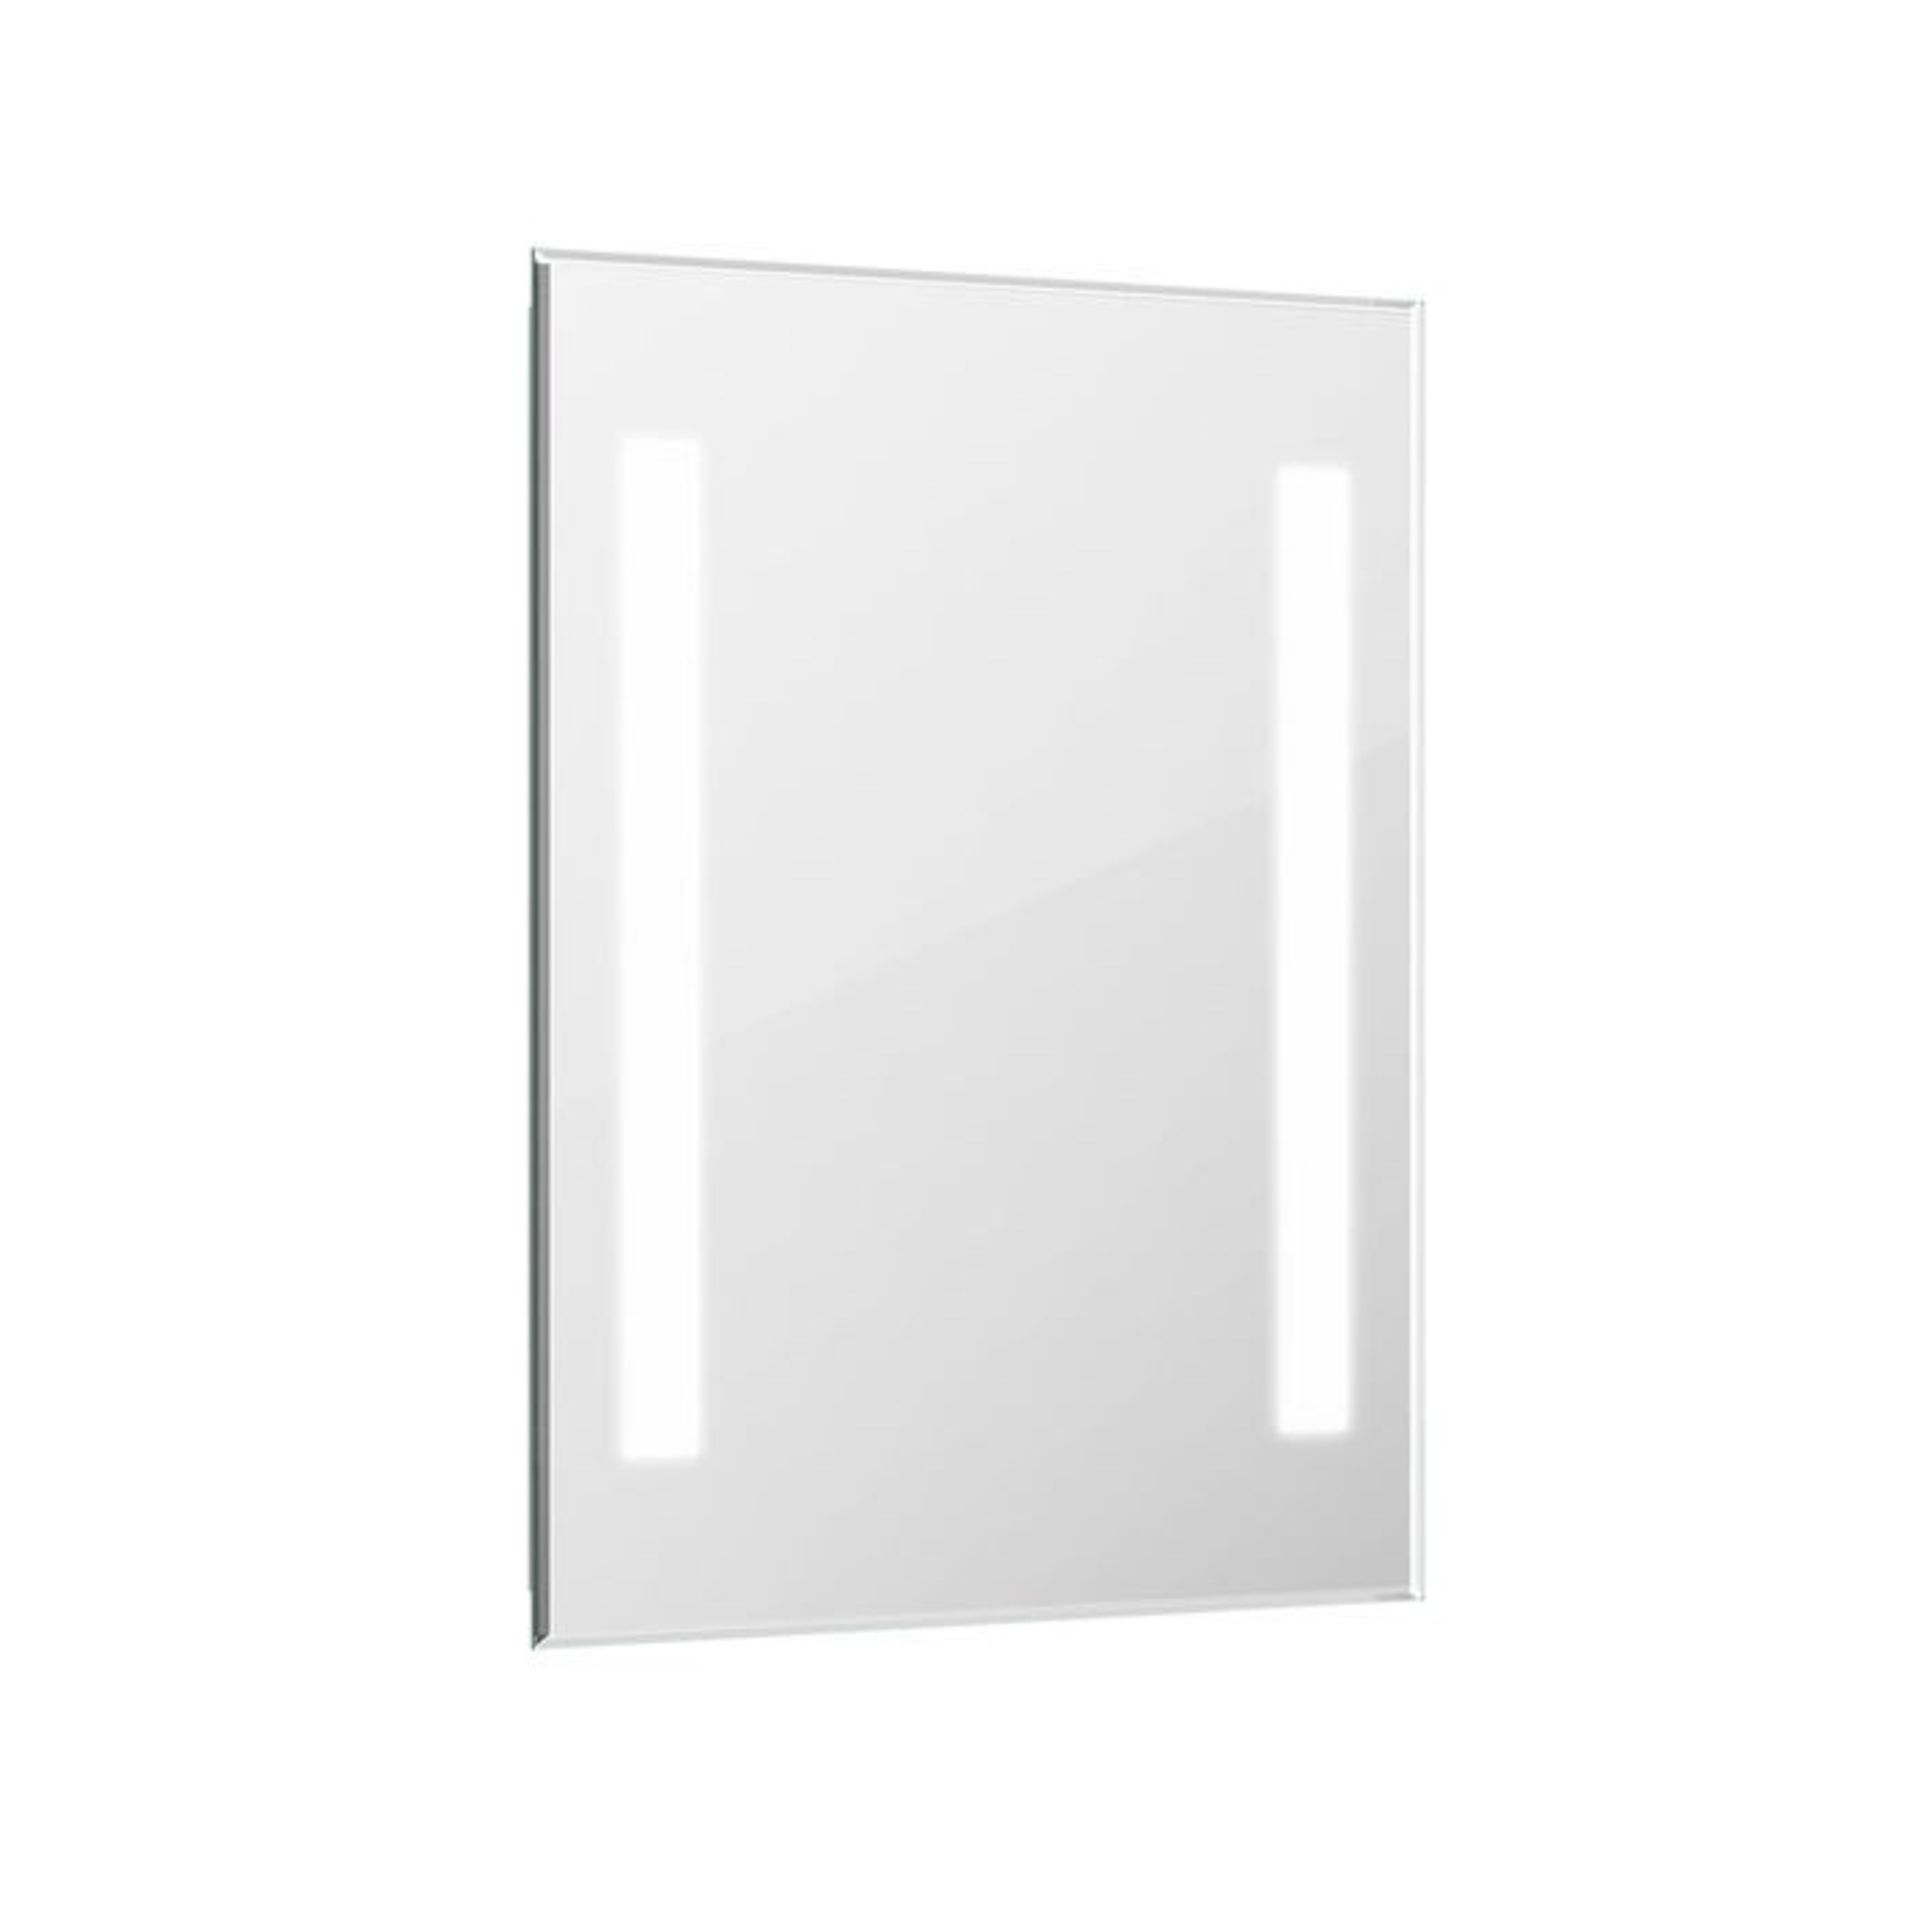 (WG188) 450x600mm Omega Illuminated LED Mirror. RRP £349.99. Energy efficient LED lighting wit... - Image 5 of 5